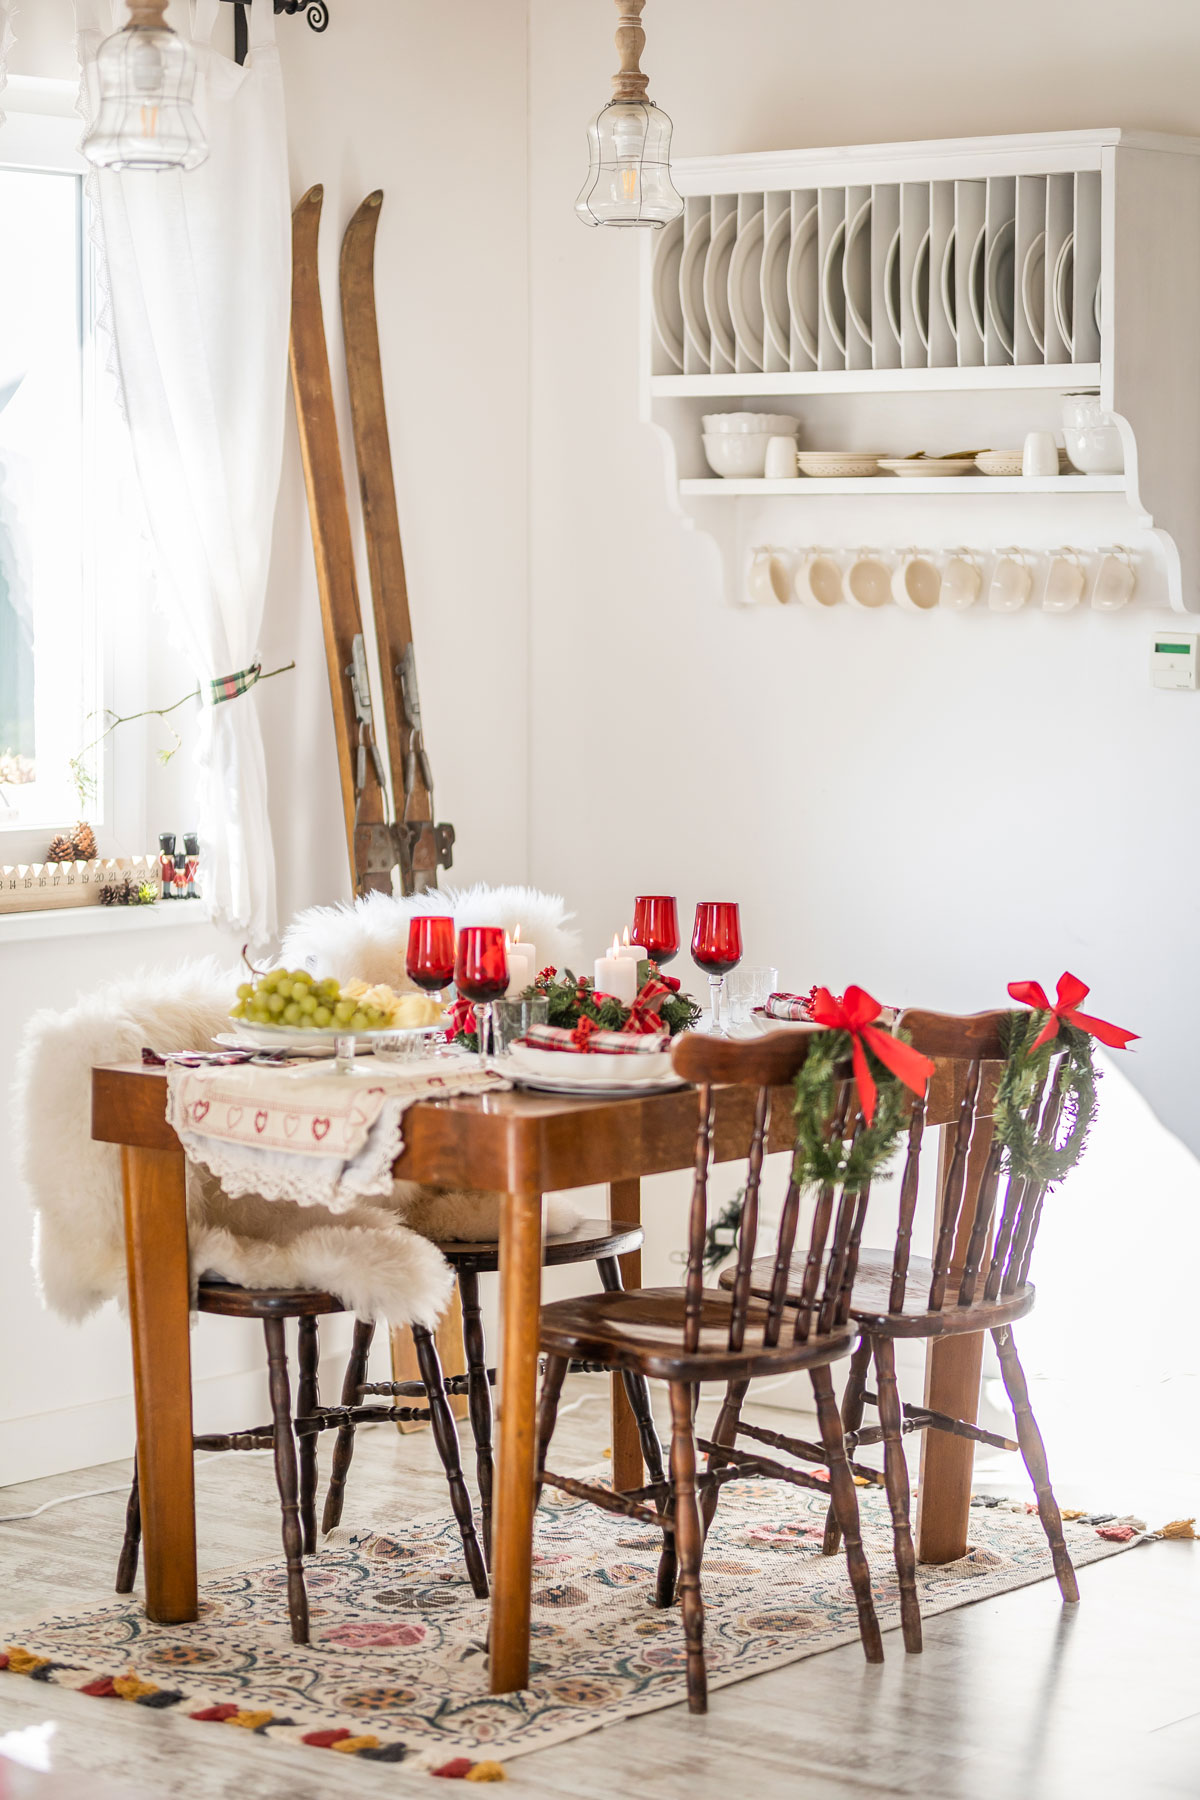 starý jedálenský stôl s retro drevenými ozdobne vyrezávanými stoličkami, na stole je slávnostné vianočné prestieranie v bielo-červeno.-zelenej kombinácii, na operadlách stoličiek sú čečinové venčeky, pri jednej stene vedľa stola sú opreté ako dekorácia retro drevené lyže